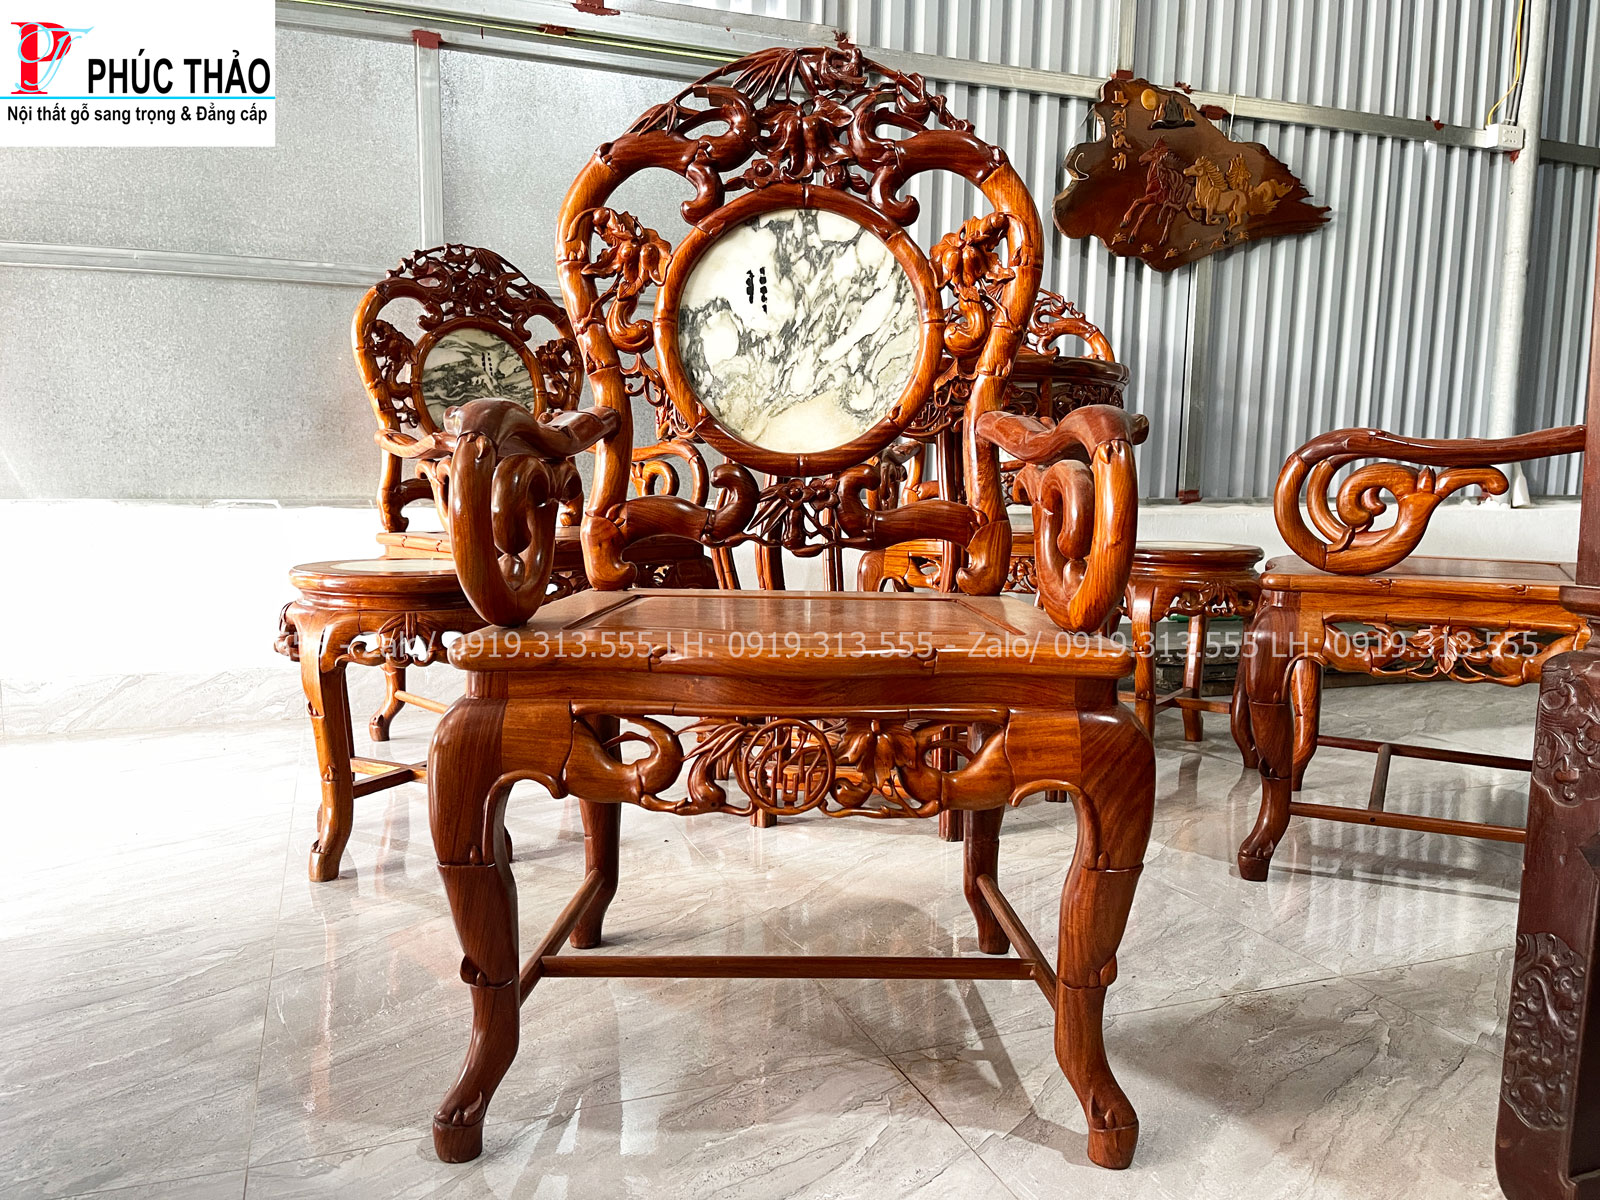 Hình ảnh chi tiết bộ bàn ghế trúc dưa gỗ gụ Quảng Bình 